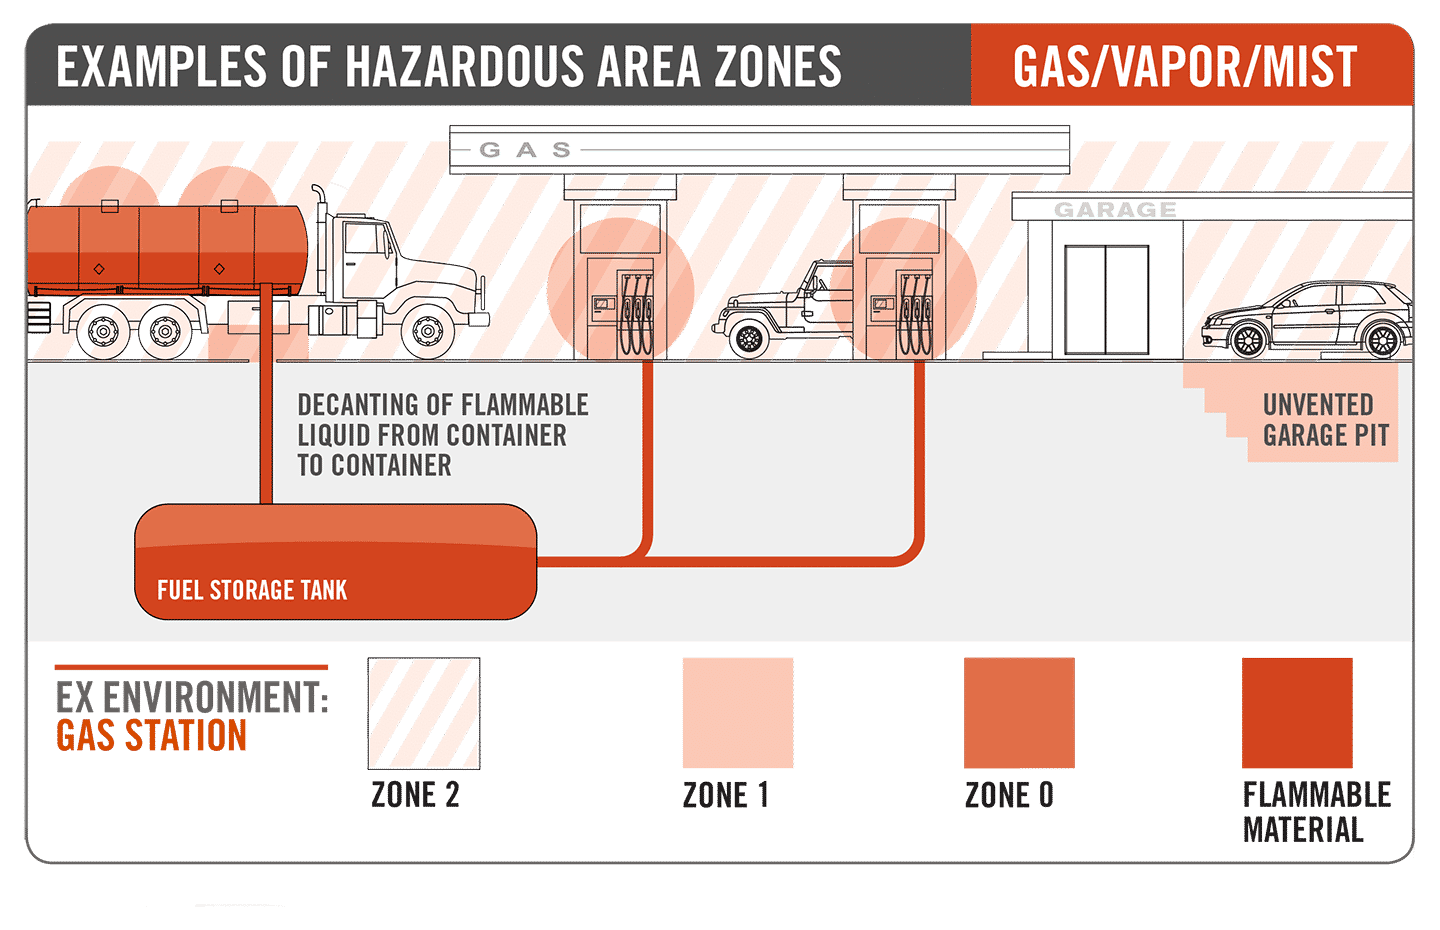 Atex zones explained. zone 1 zone 2 zone 3